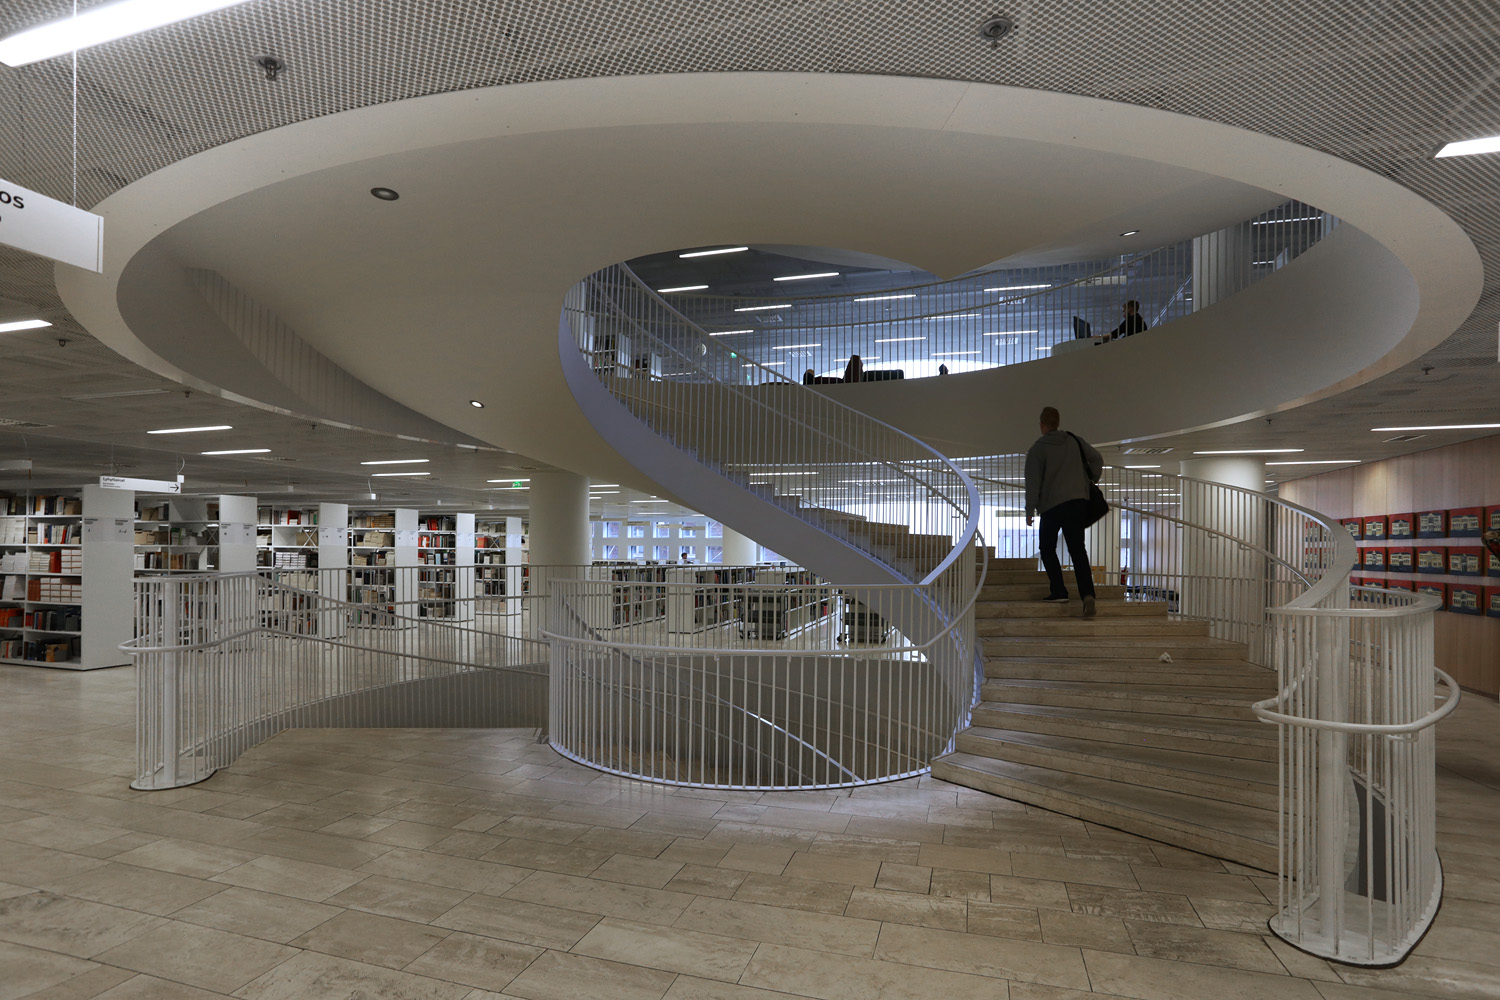 bill-hocker-university-library-helsinki-finland-2019